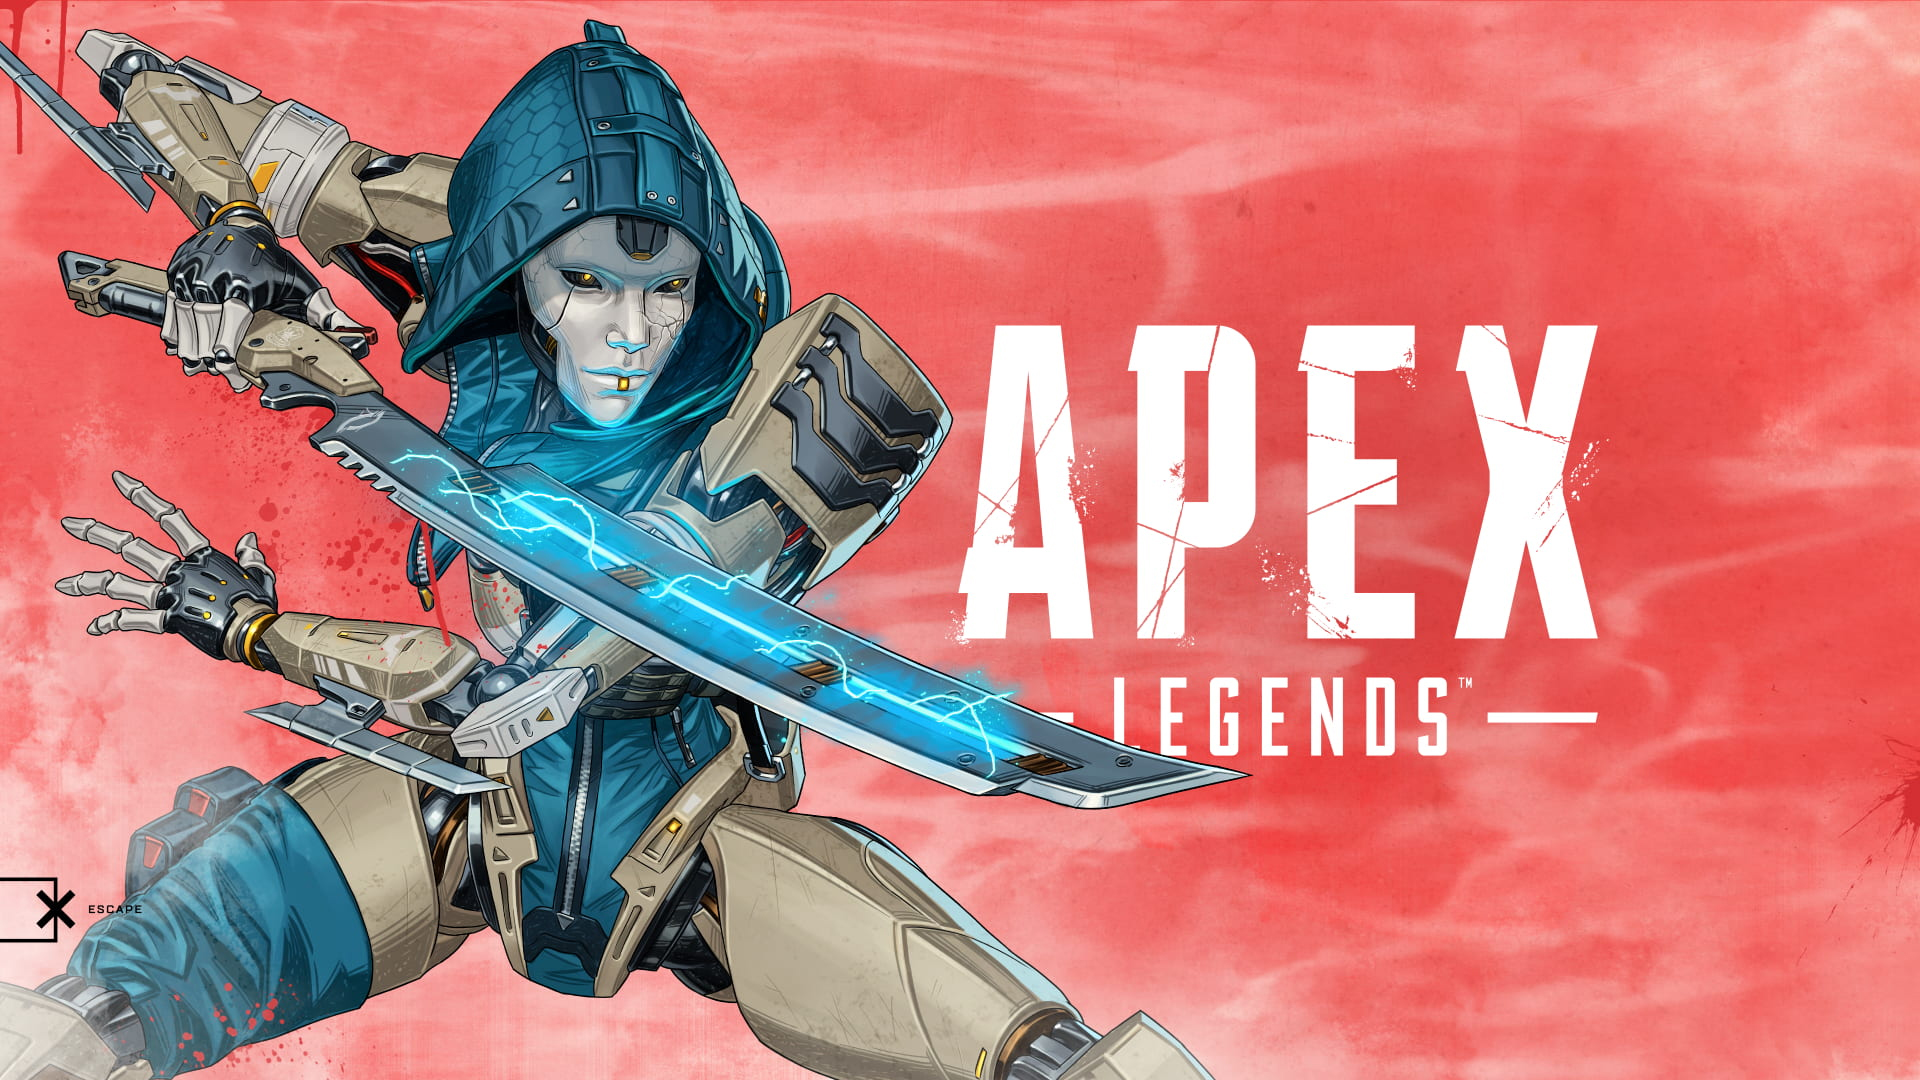 Ash Apex Legends 1920x1080